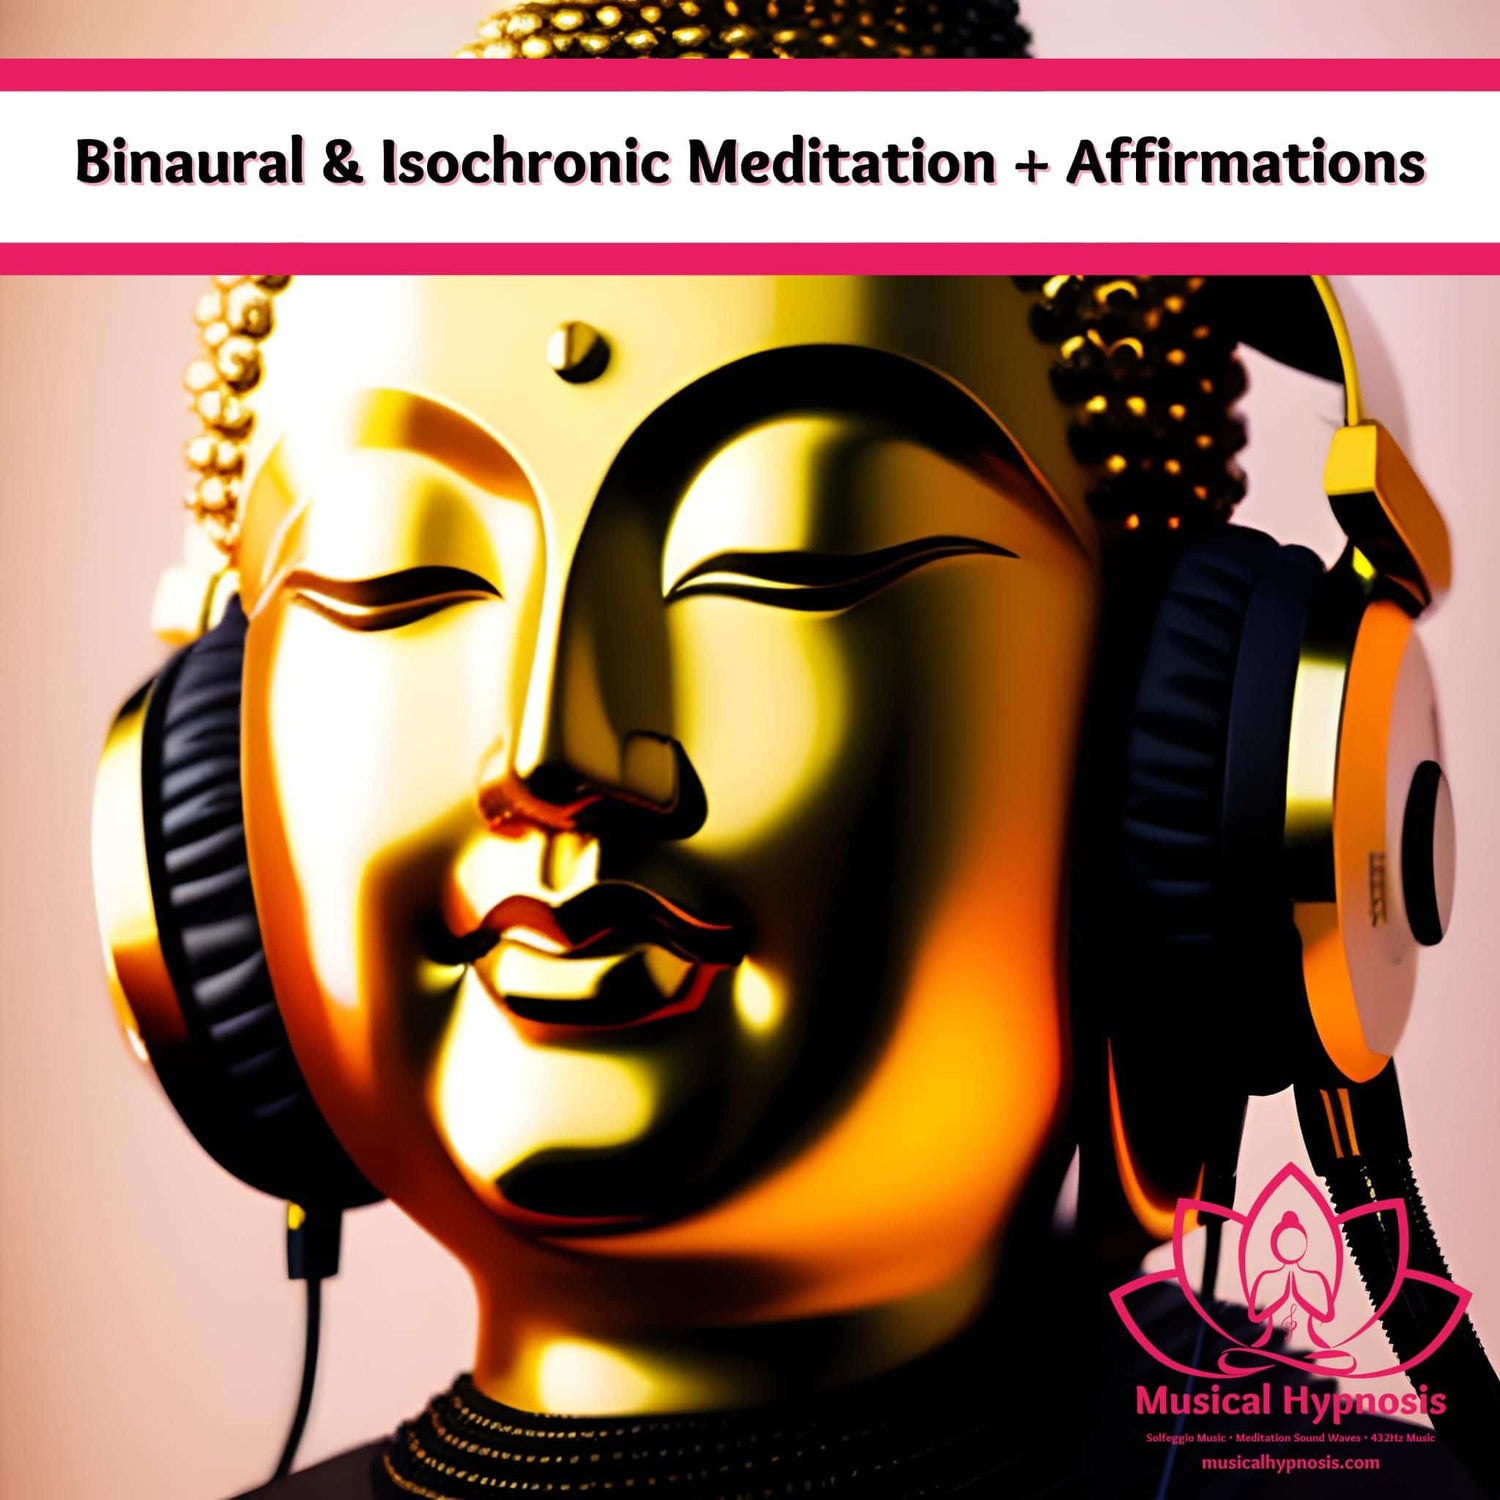 Binaural & Isochronic Meditation Music + Affirmations